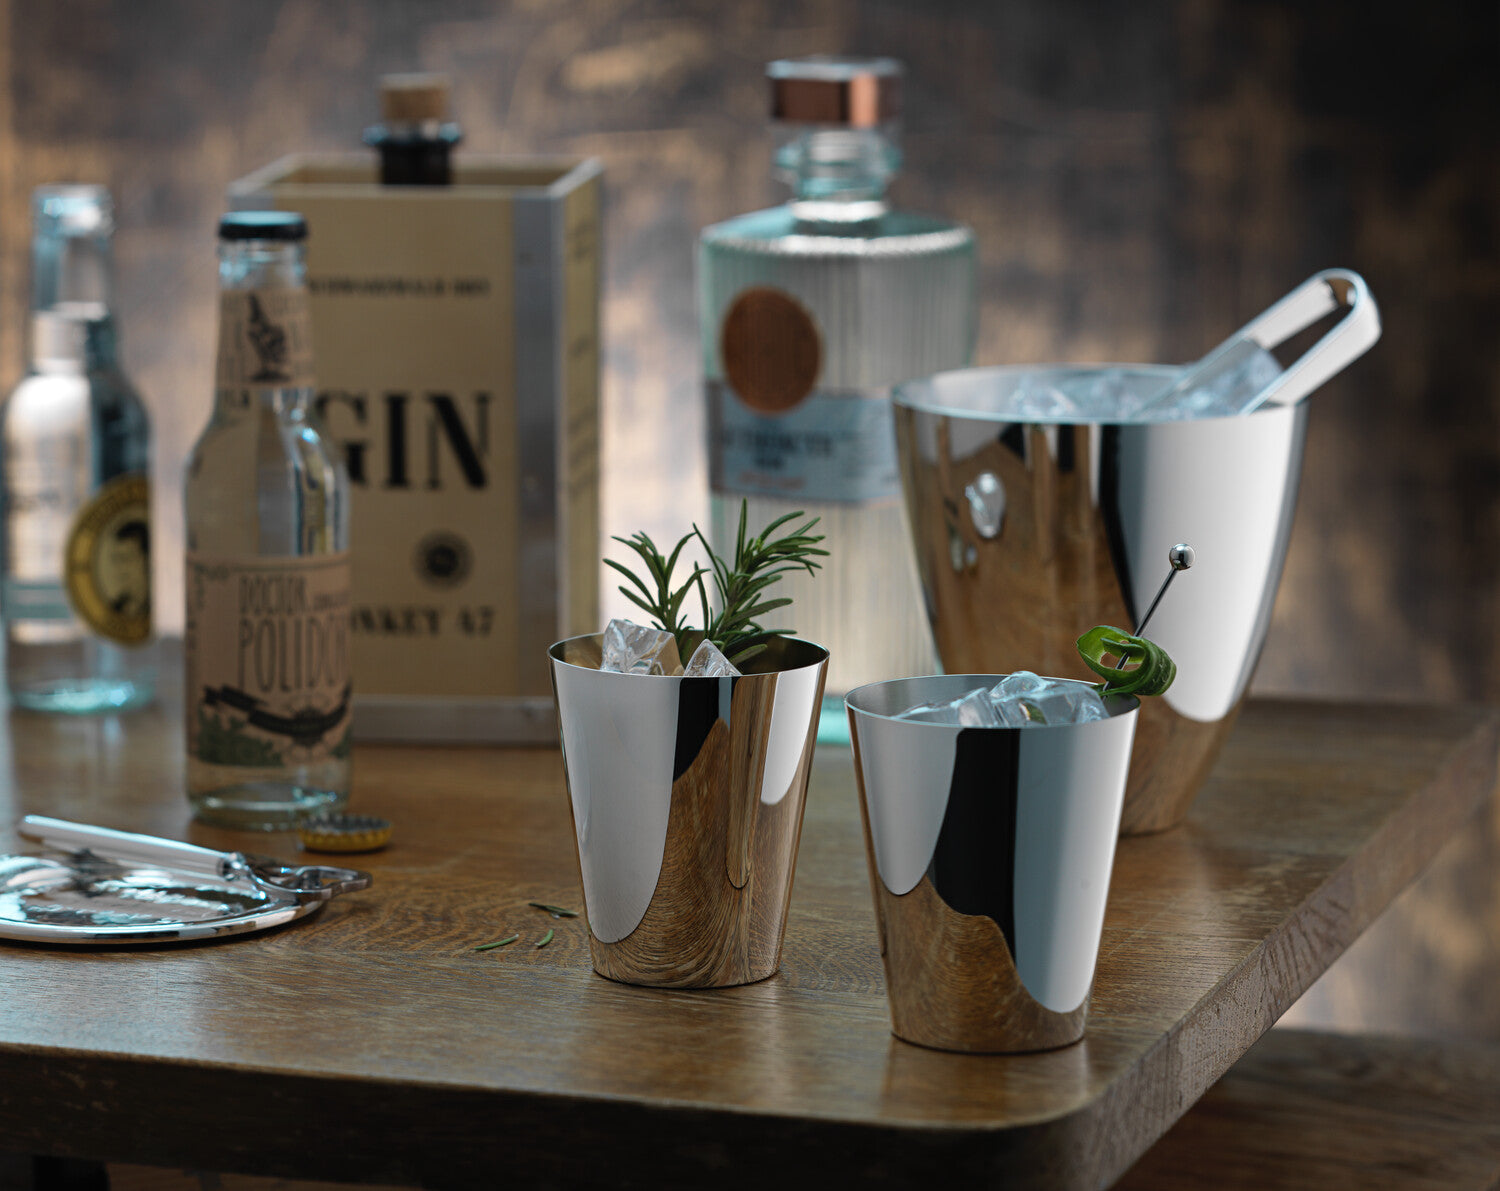 Eine Auswahl an Ginflaschen mit einem Eiskübel aus Edelstahl und zwei modernen, mit Eis gefüllten Cocktailgläsern auf einem Holztisch.